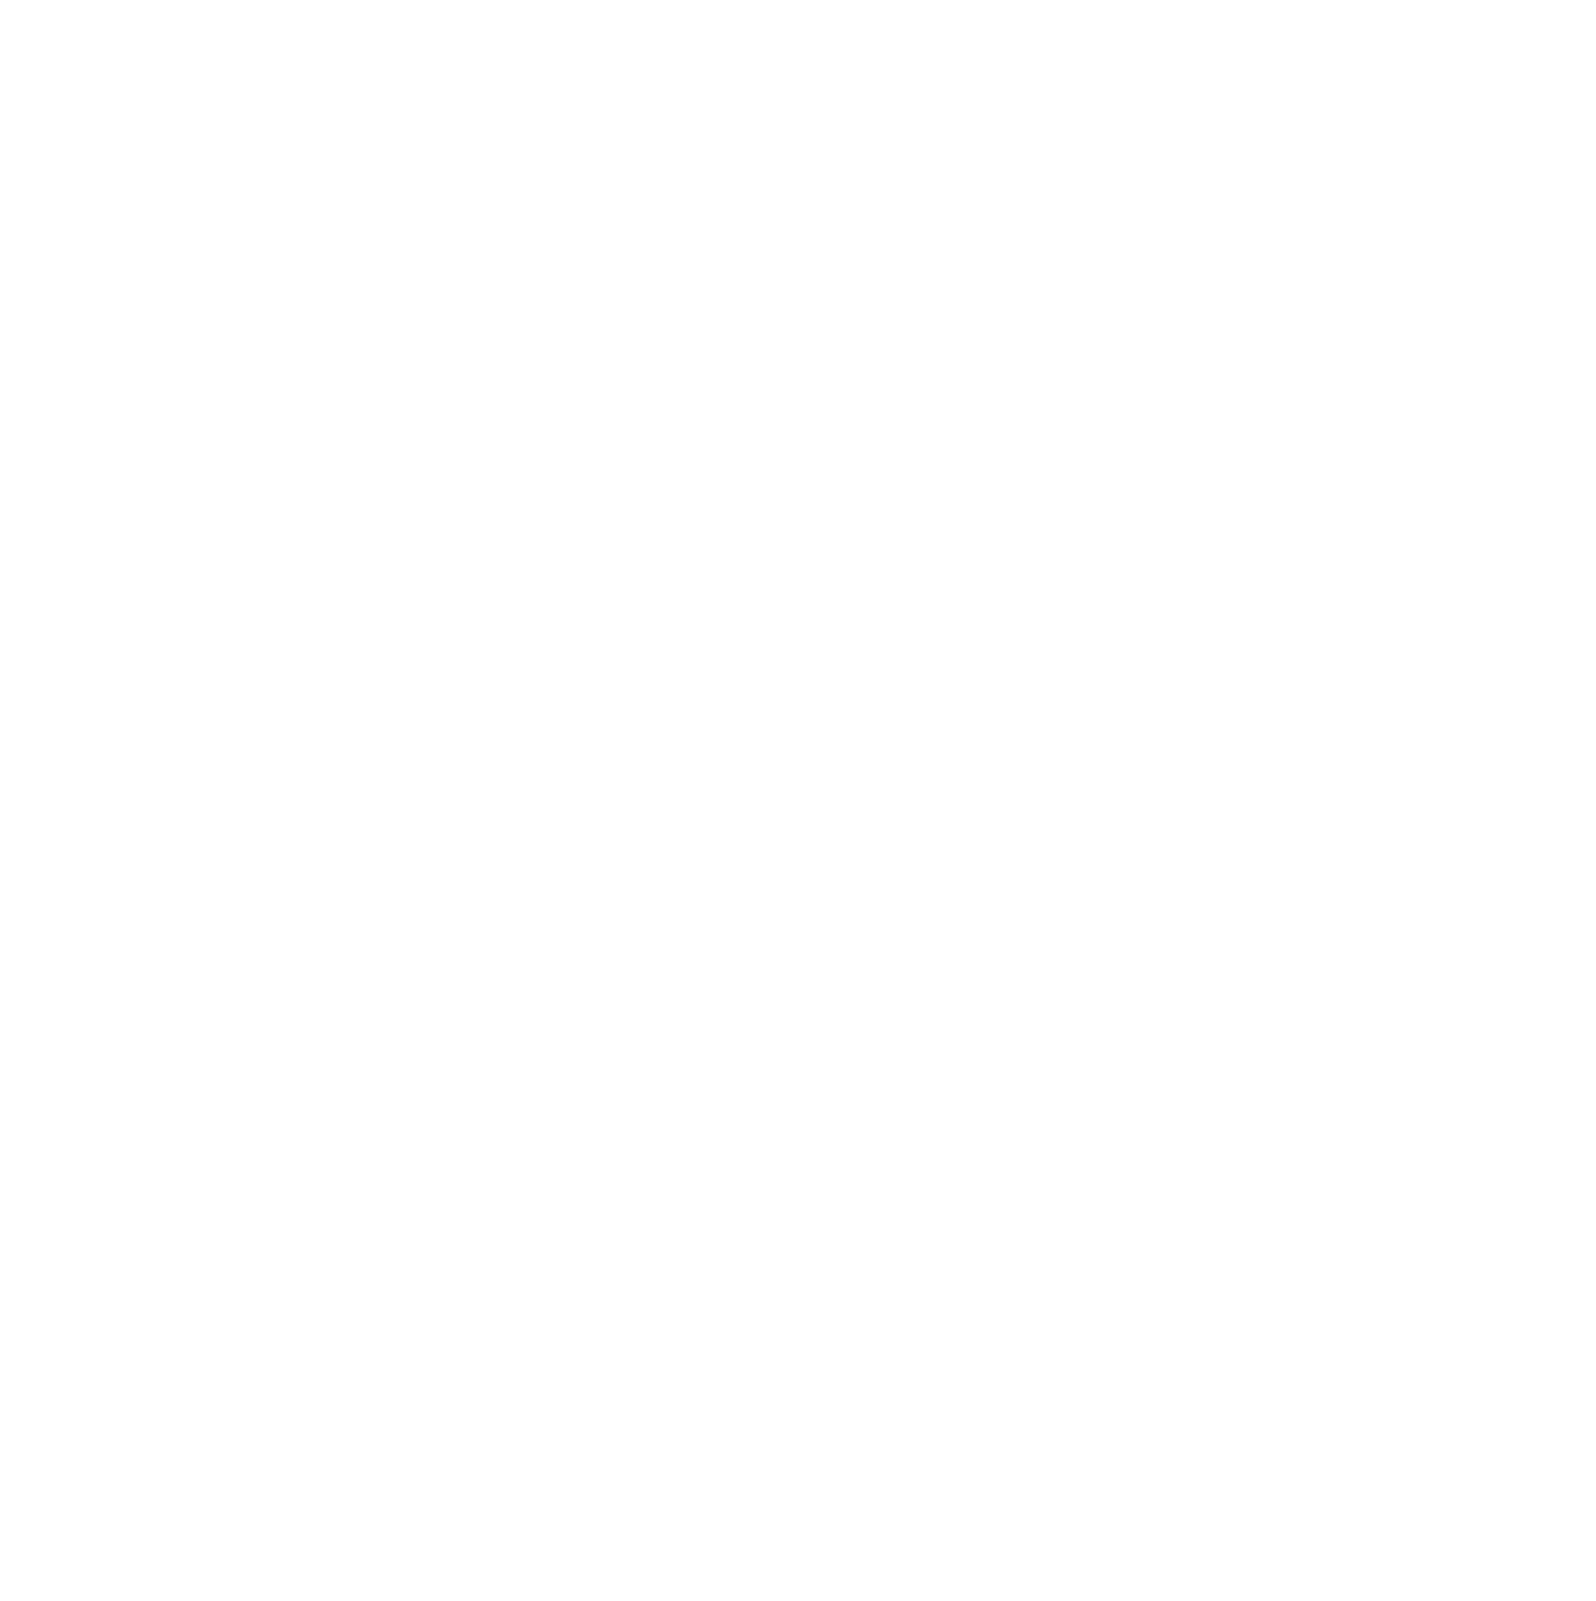 Söktas Tekstil logo grand pour les fonds sombres (PNG transparent)